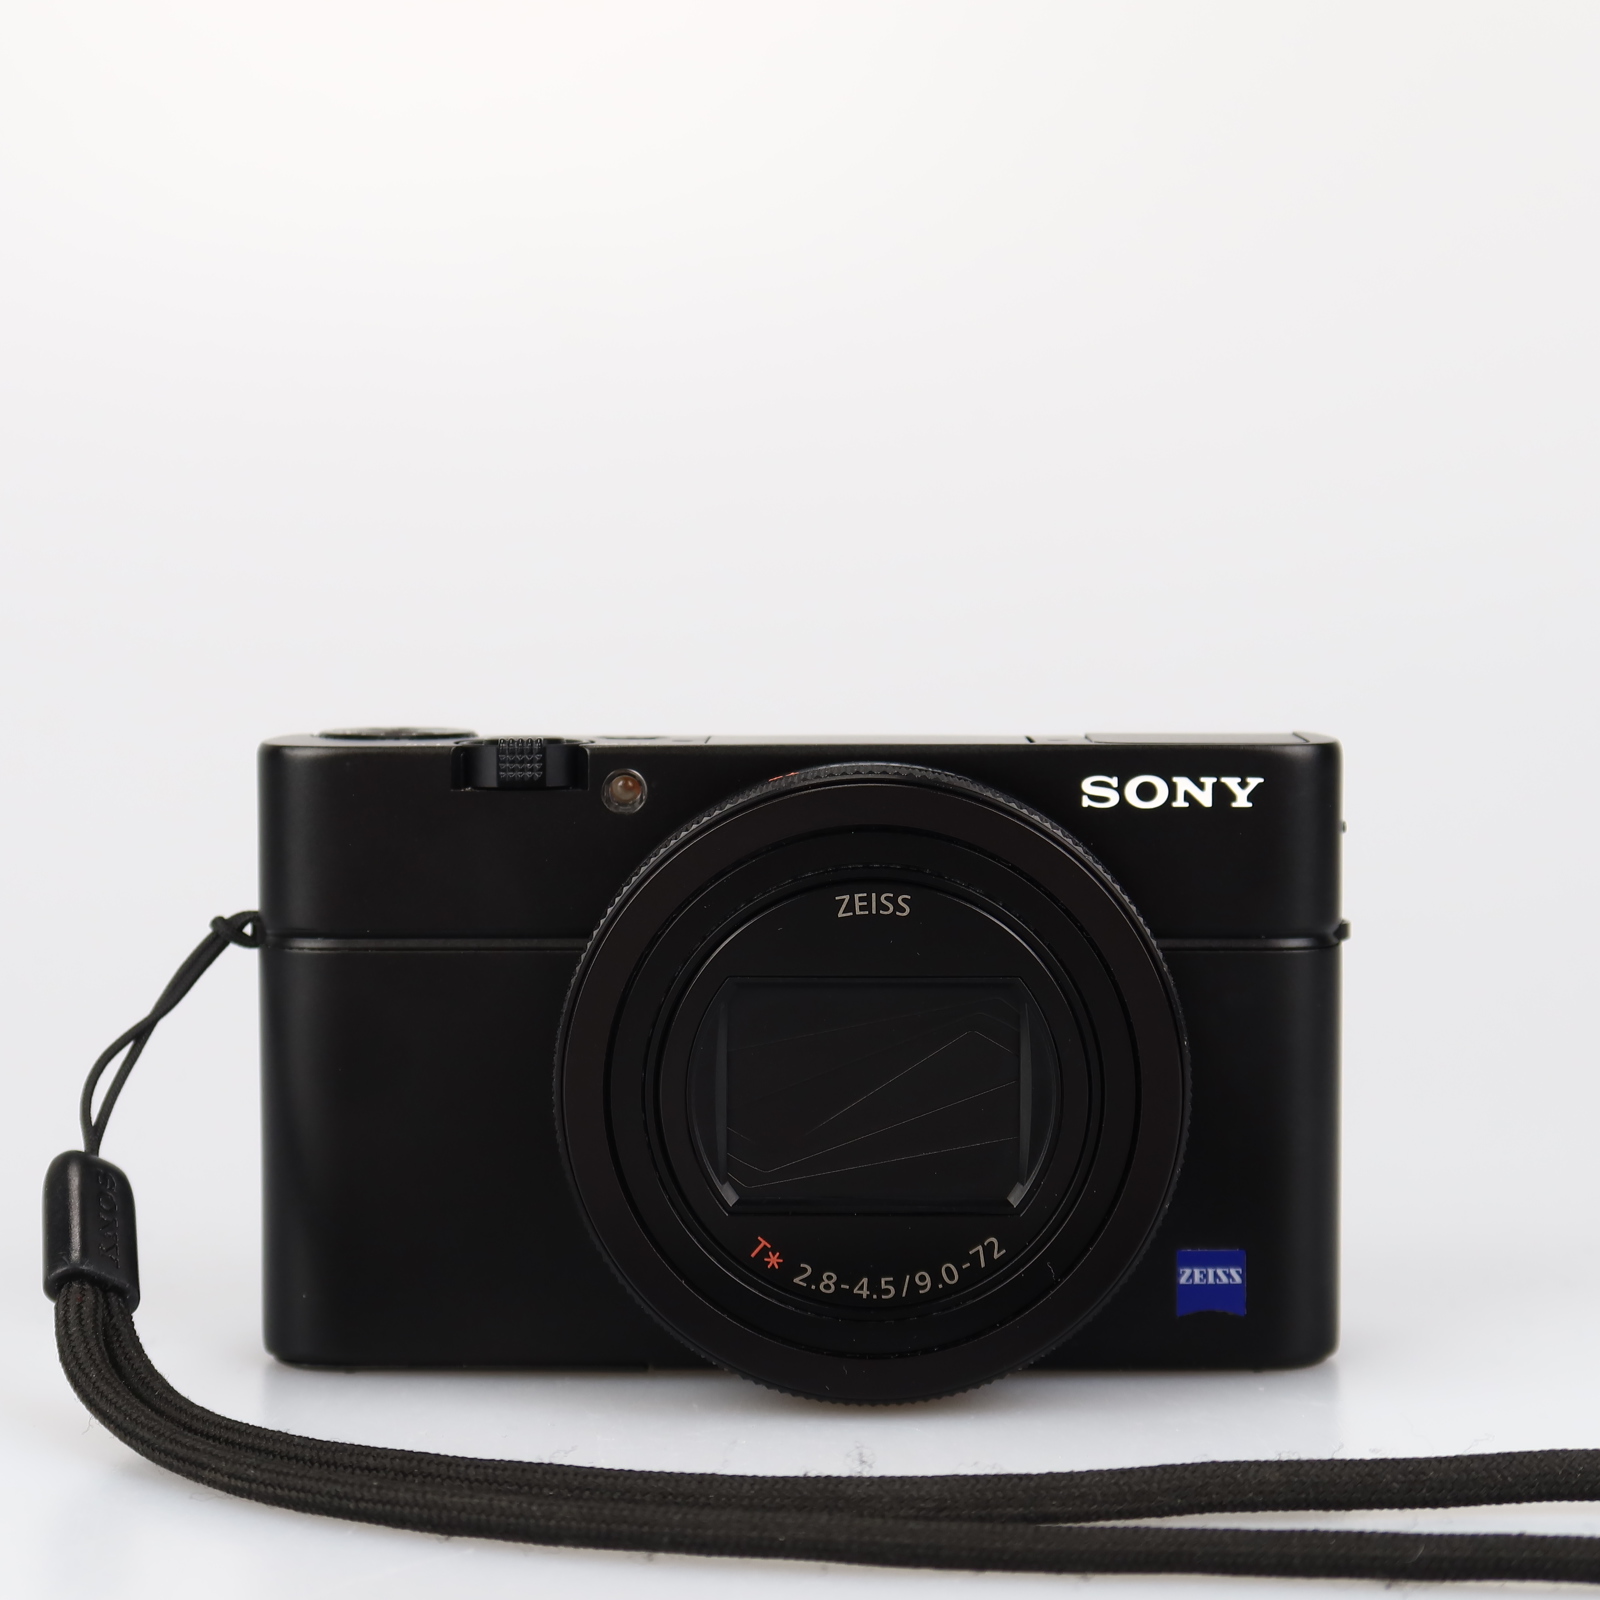 (Myyty) Sony RX100 VII -digitaalikamera (Käytetty) (Takuu)